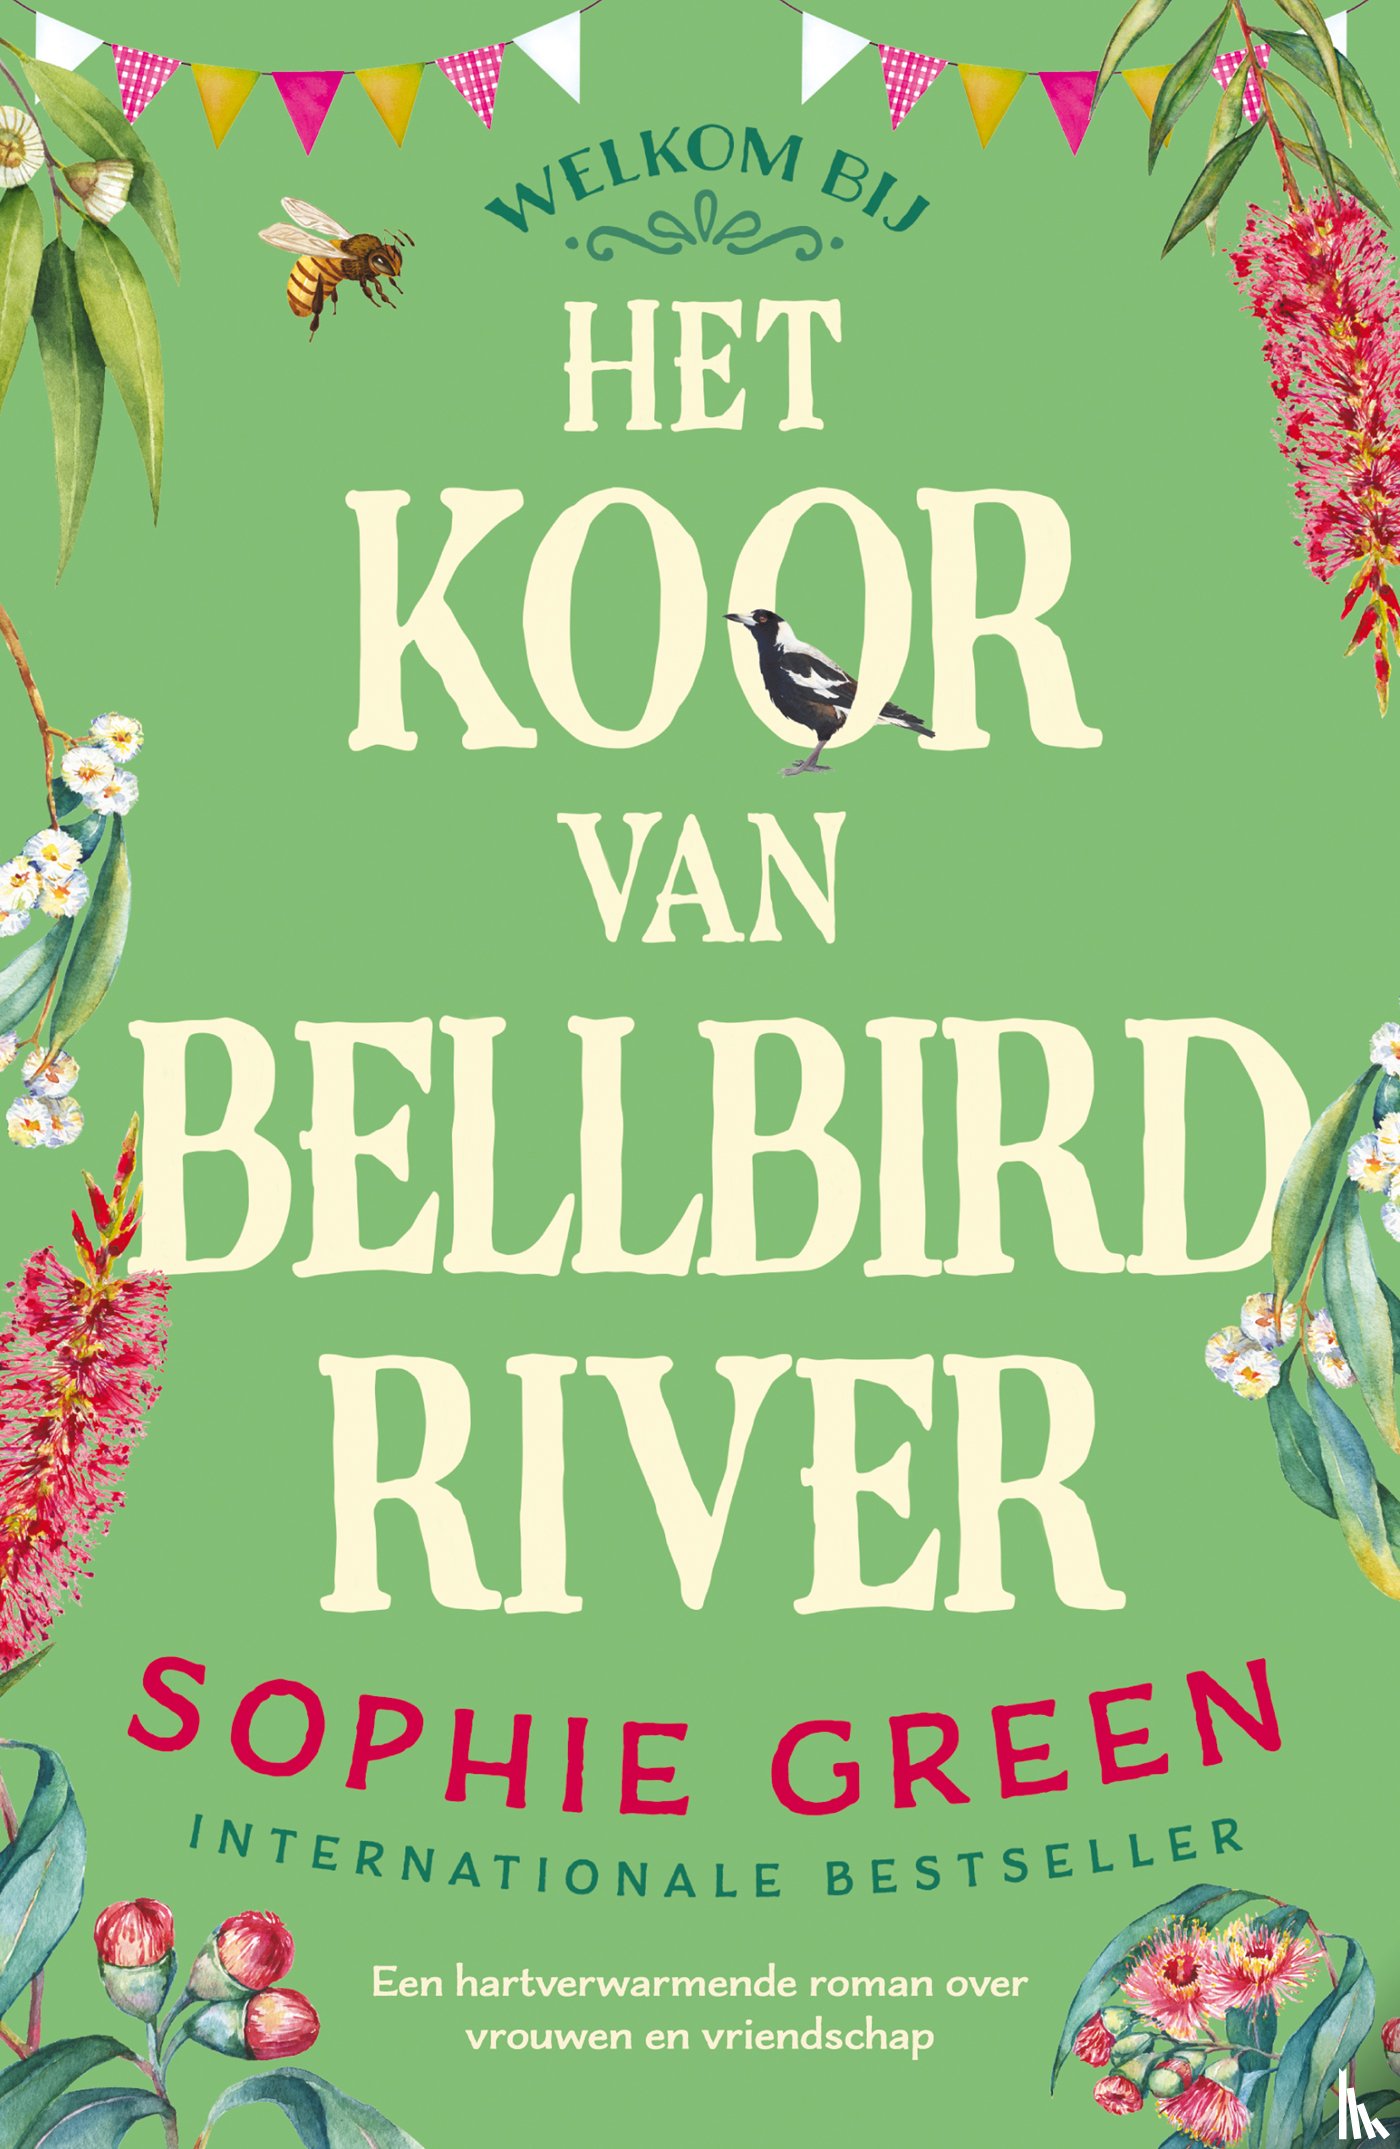 Green, Sophie - Het koor van Bellbird River